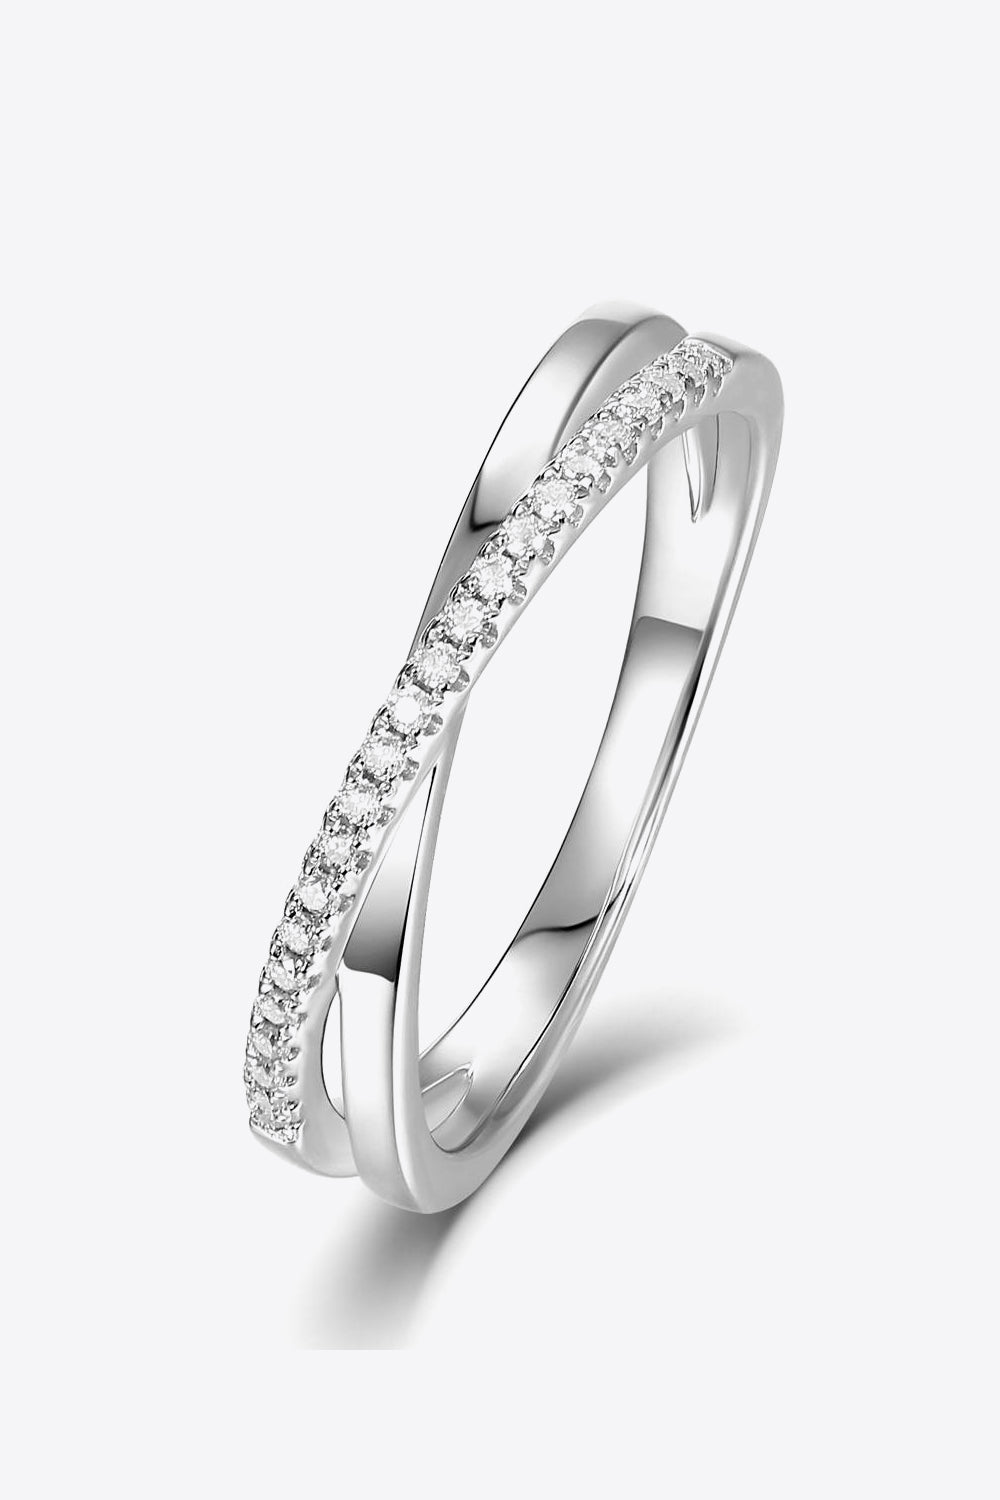 KESLEY X Ring Moissanite Crisscross 925 Sterling Silver Women's Fine Jewelry